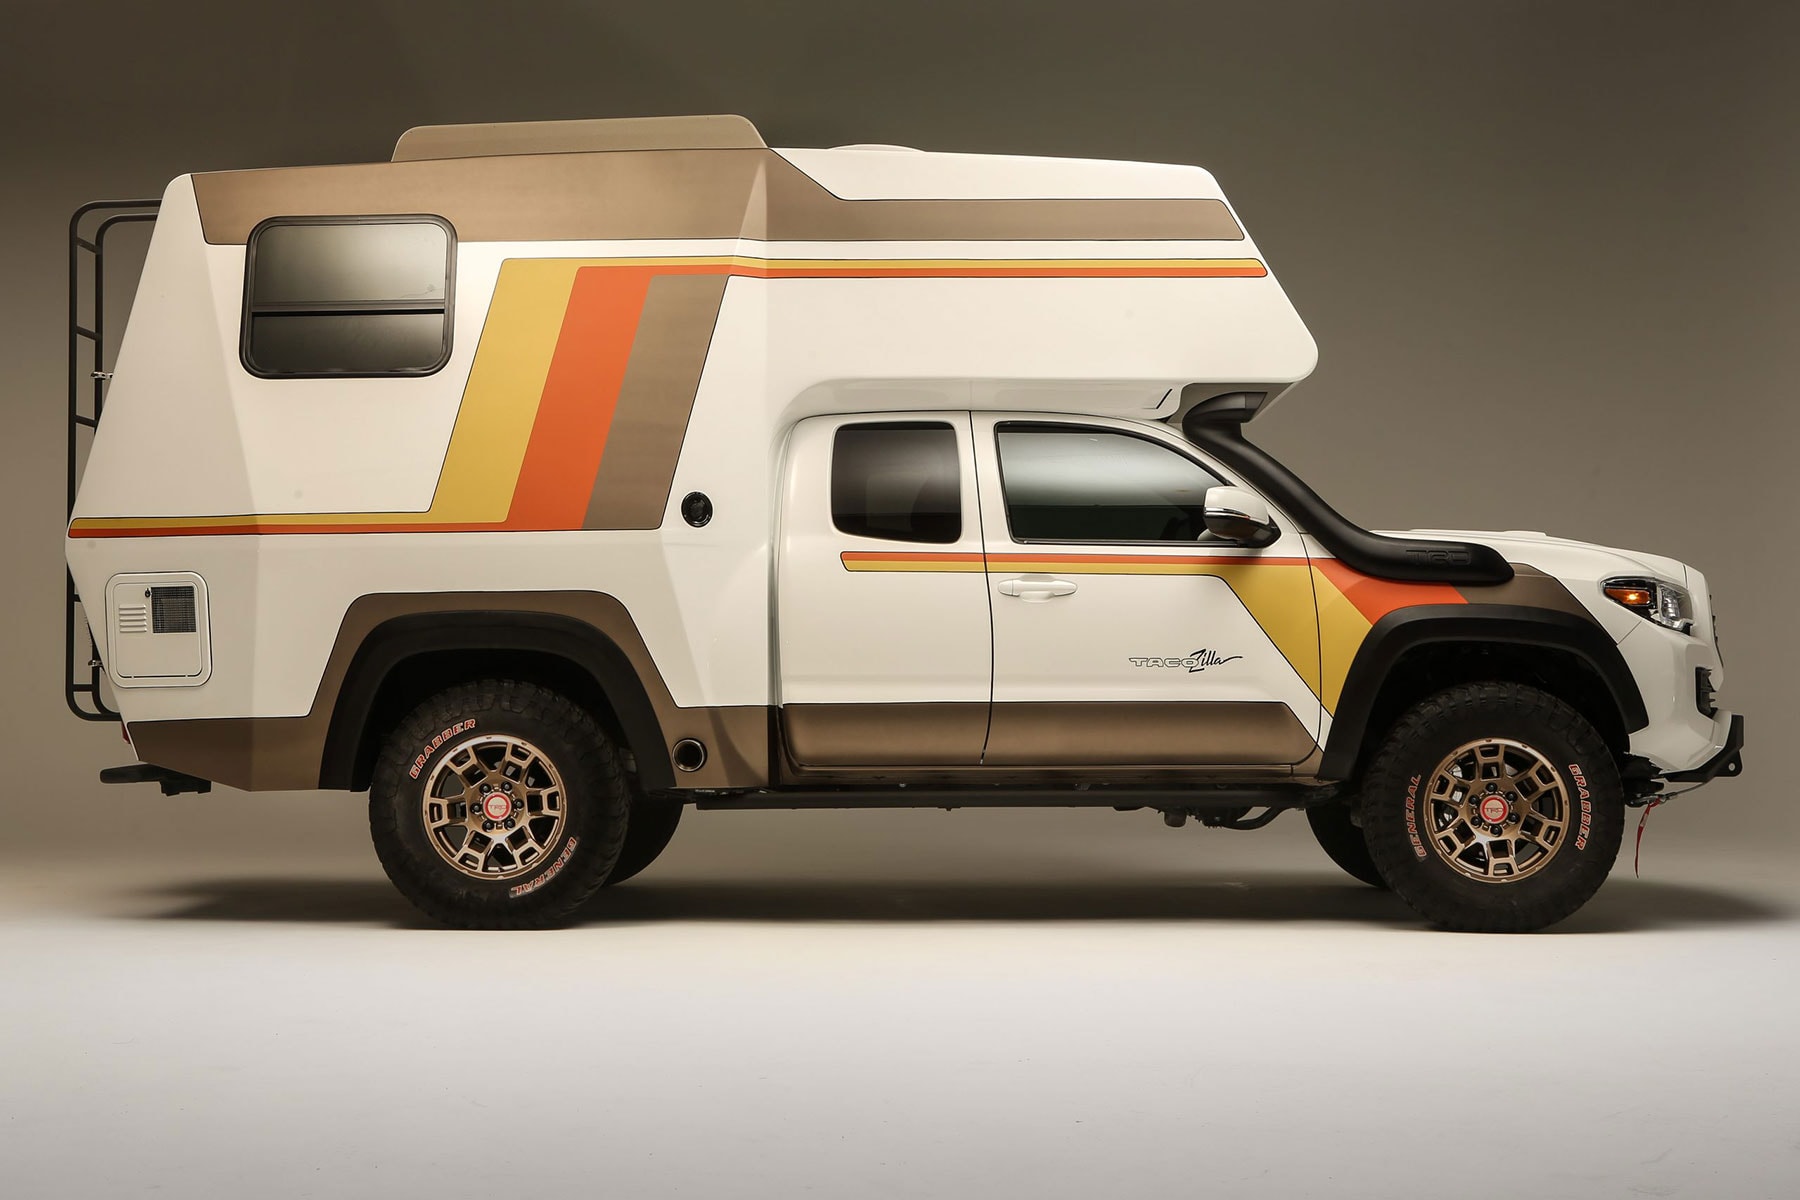 米トヨタが1970年代のキャンピングカーをモチーフとした新型モデルを世界初公開 Toyota 2021 SEMA Tacozilla Tacoma Camper Overlanding Rig info trucks 4x4 